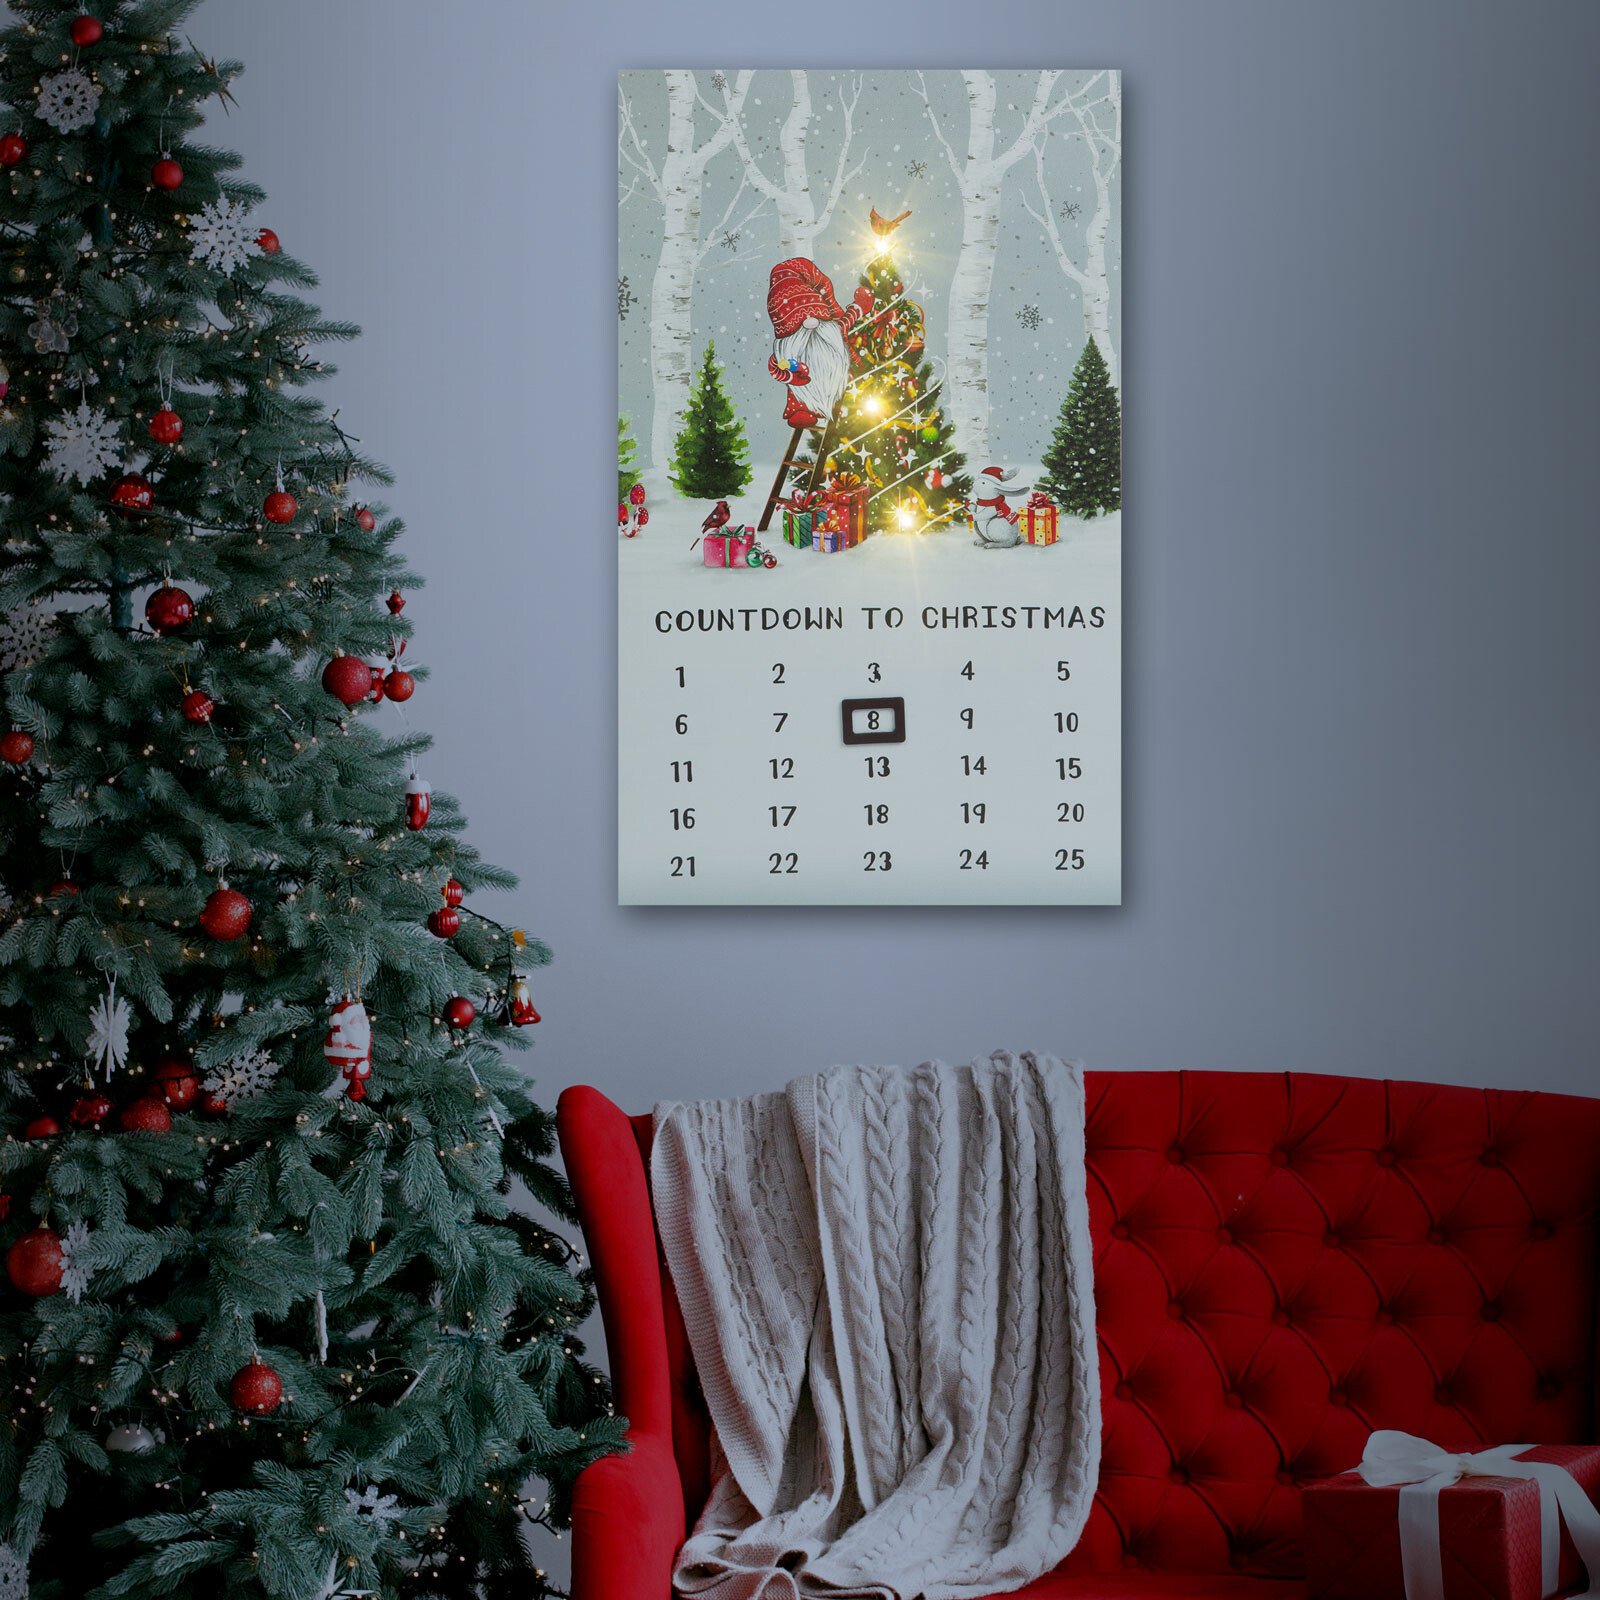 Calendar LED - 2 x AA, 30 x 50 cm thumb